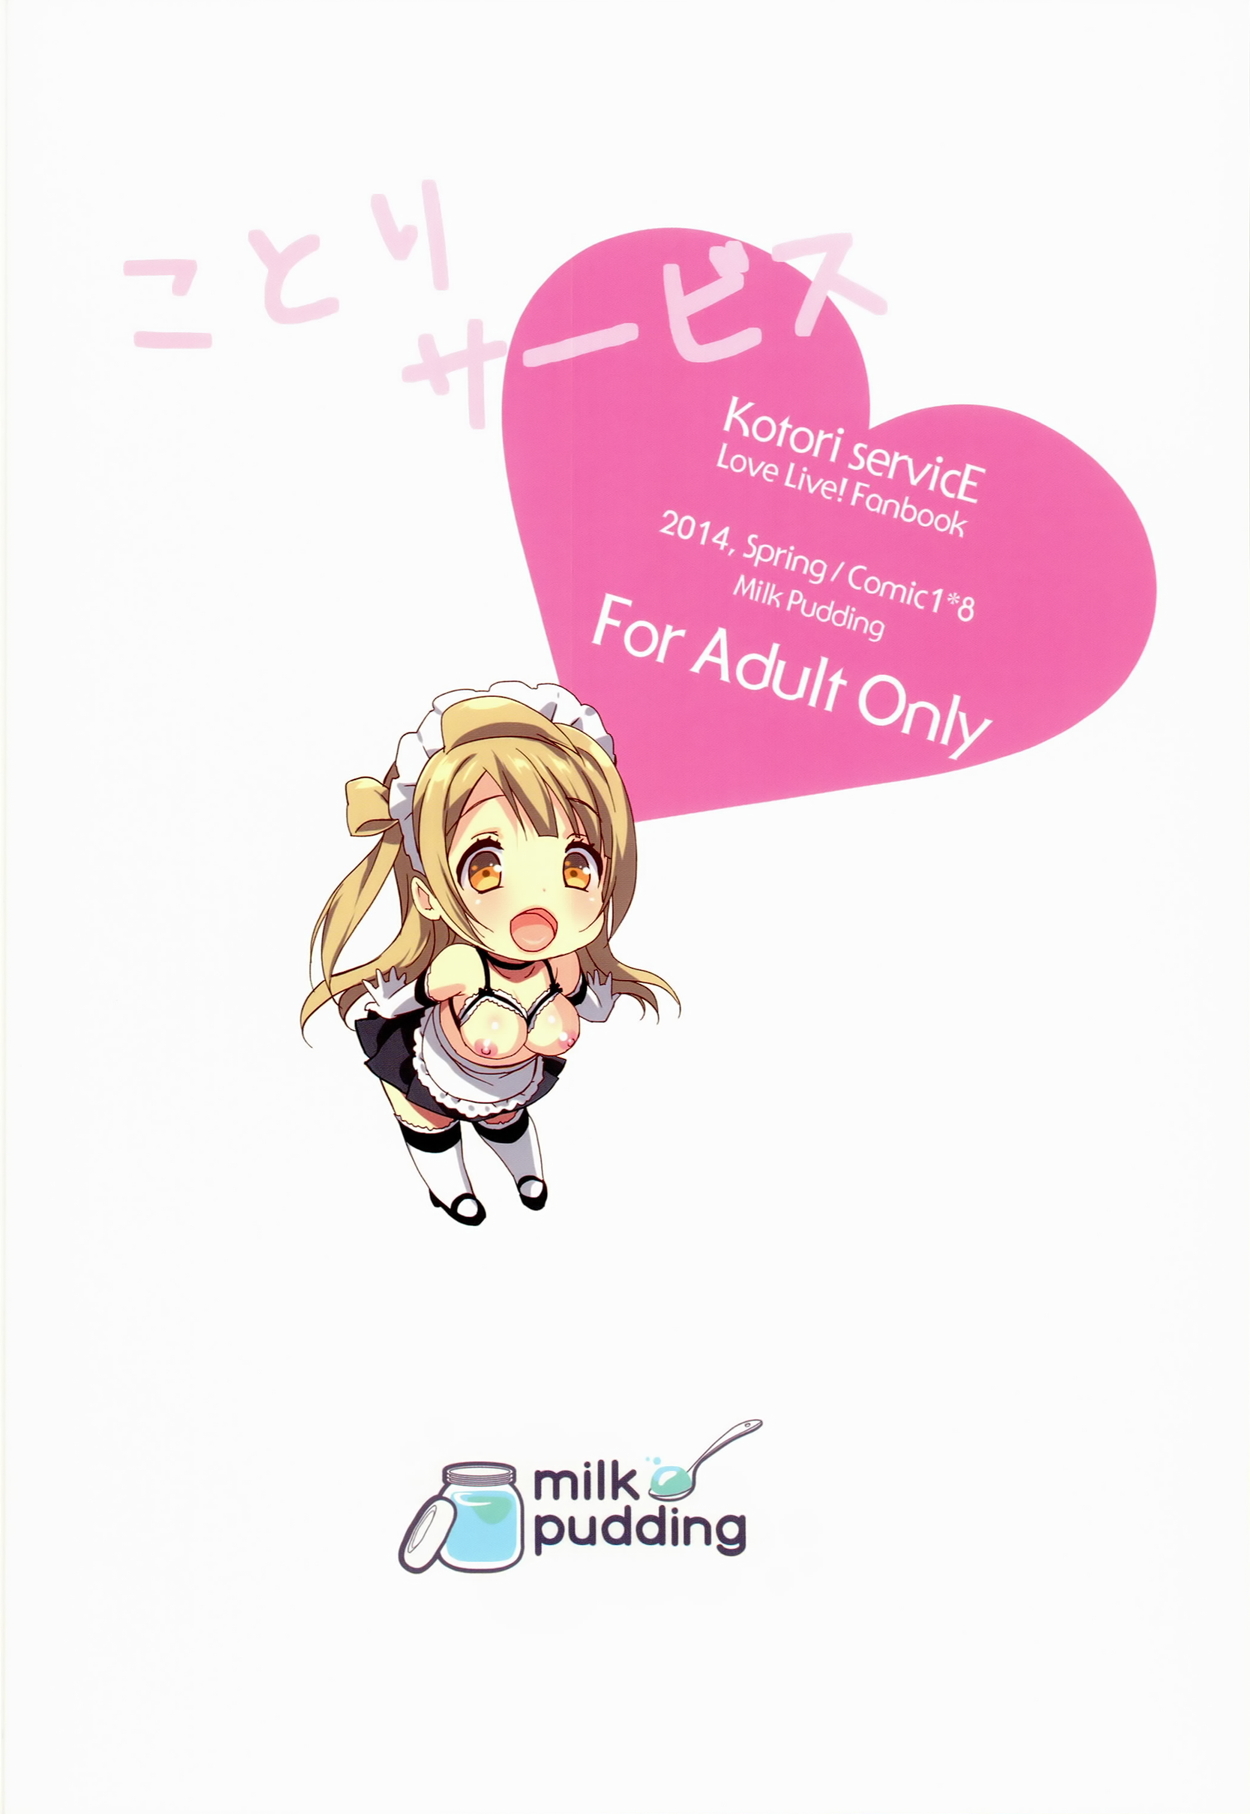 (COMIC1☆8) [Milk Pudding (emily)] ことりサービス (ラブライブ!)